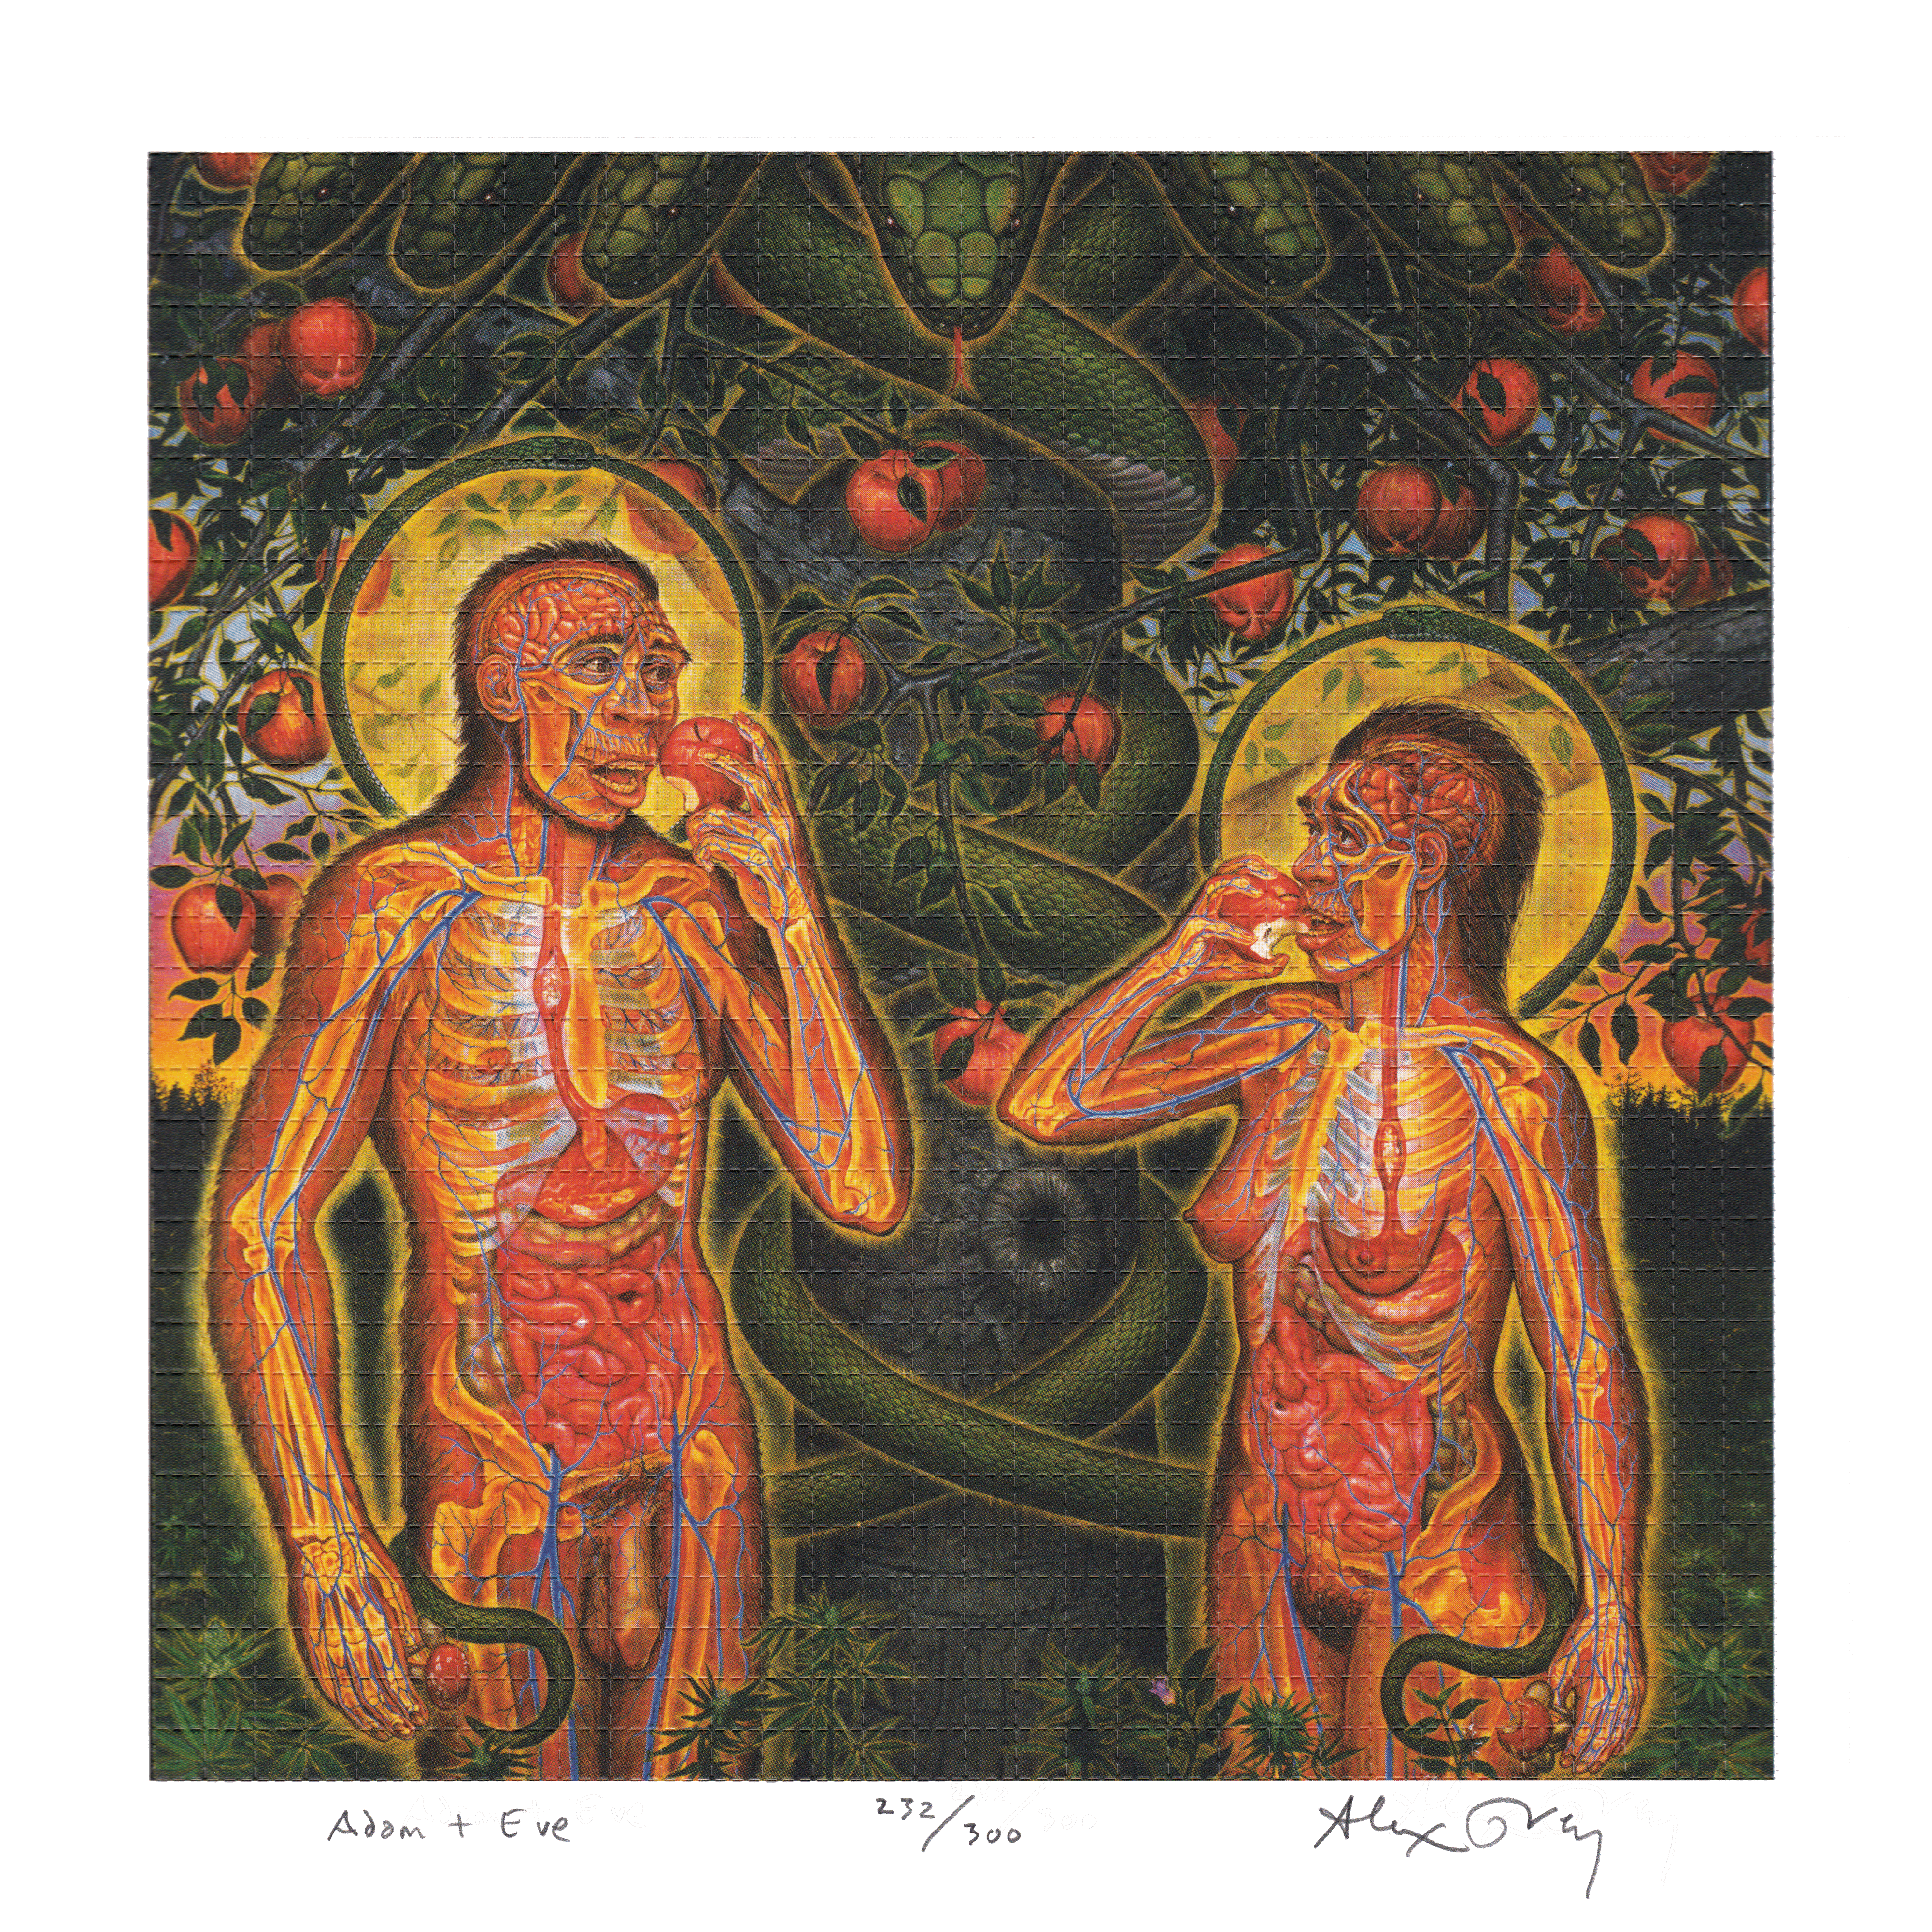 Adam & Eve by Alex Grey as LSD Blotter Art #232/300